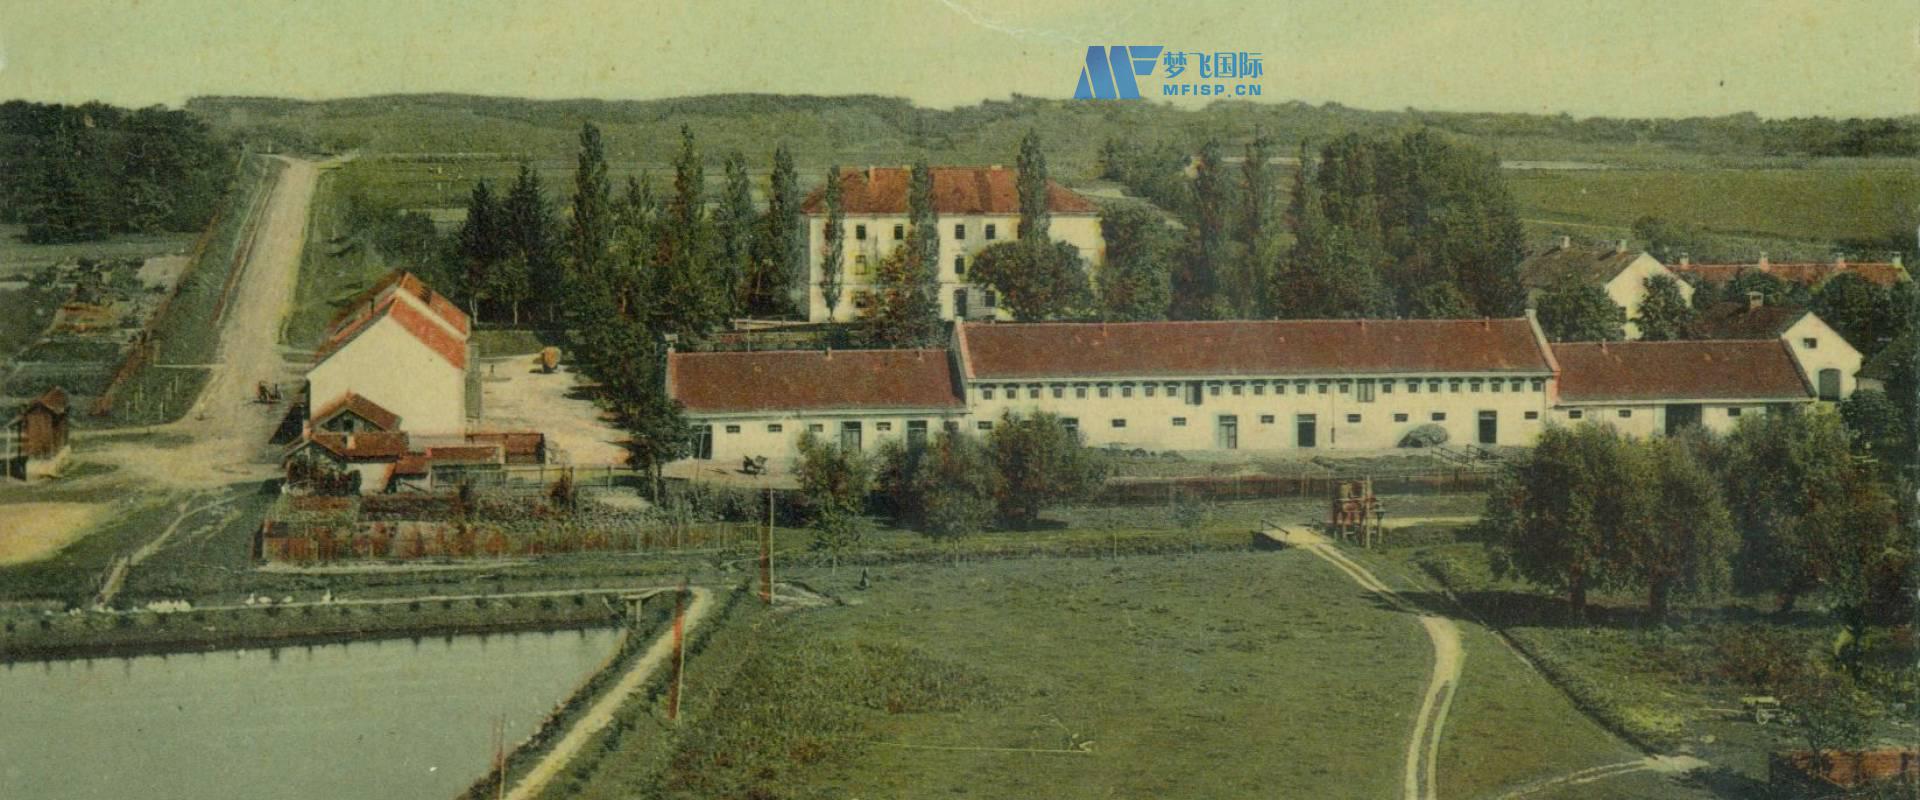 克里热夫齐经济学院-自1860年以来的农业教育传统。